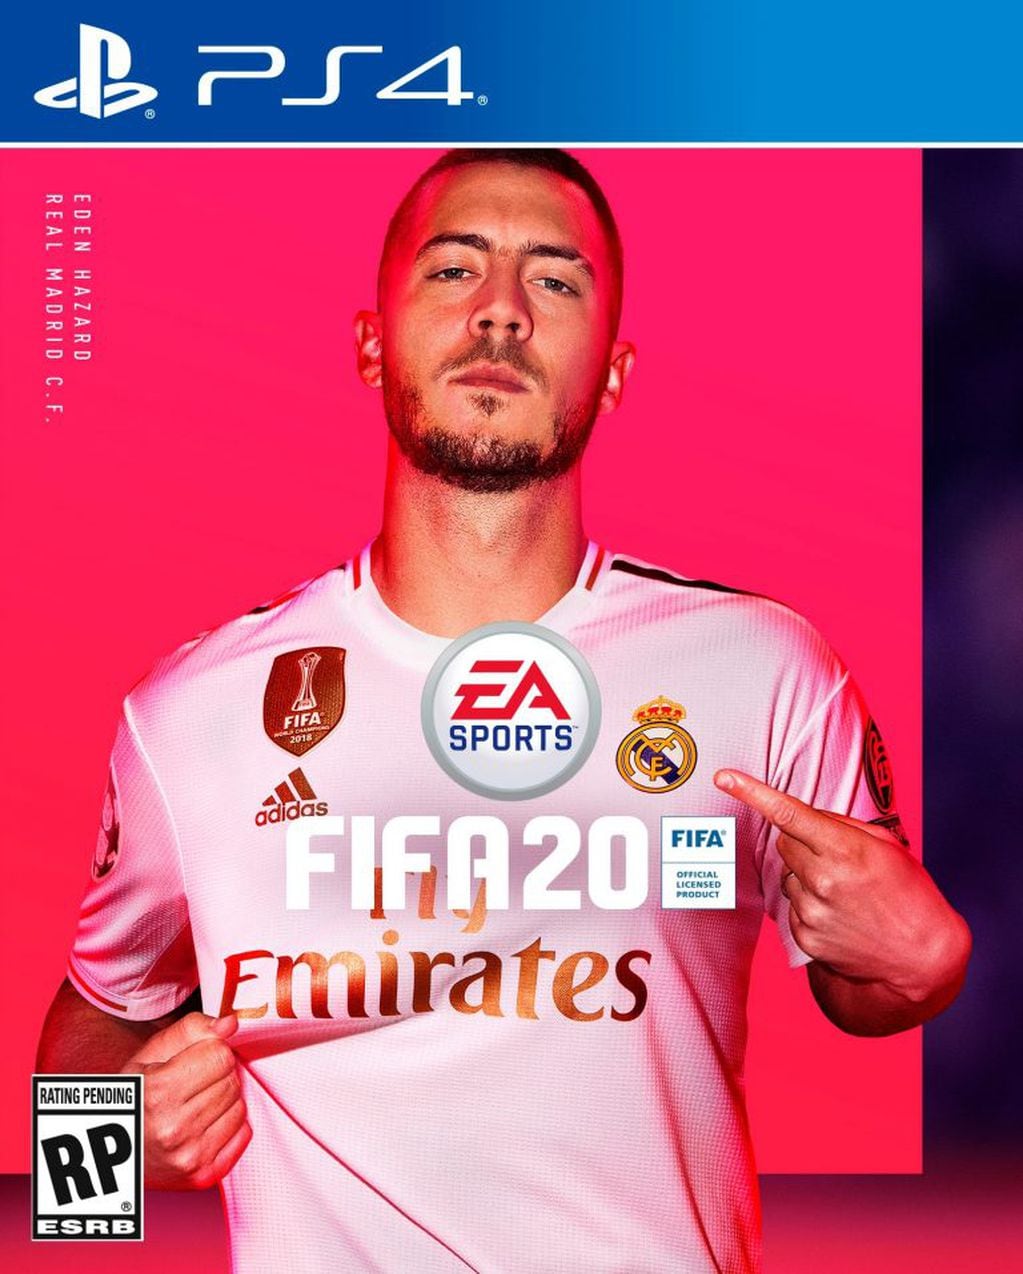 El belga Eden Hazard, de Real Madrid, figurará en la portada del juego. Foto: EA Sports via AP.